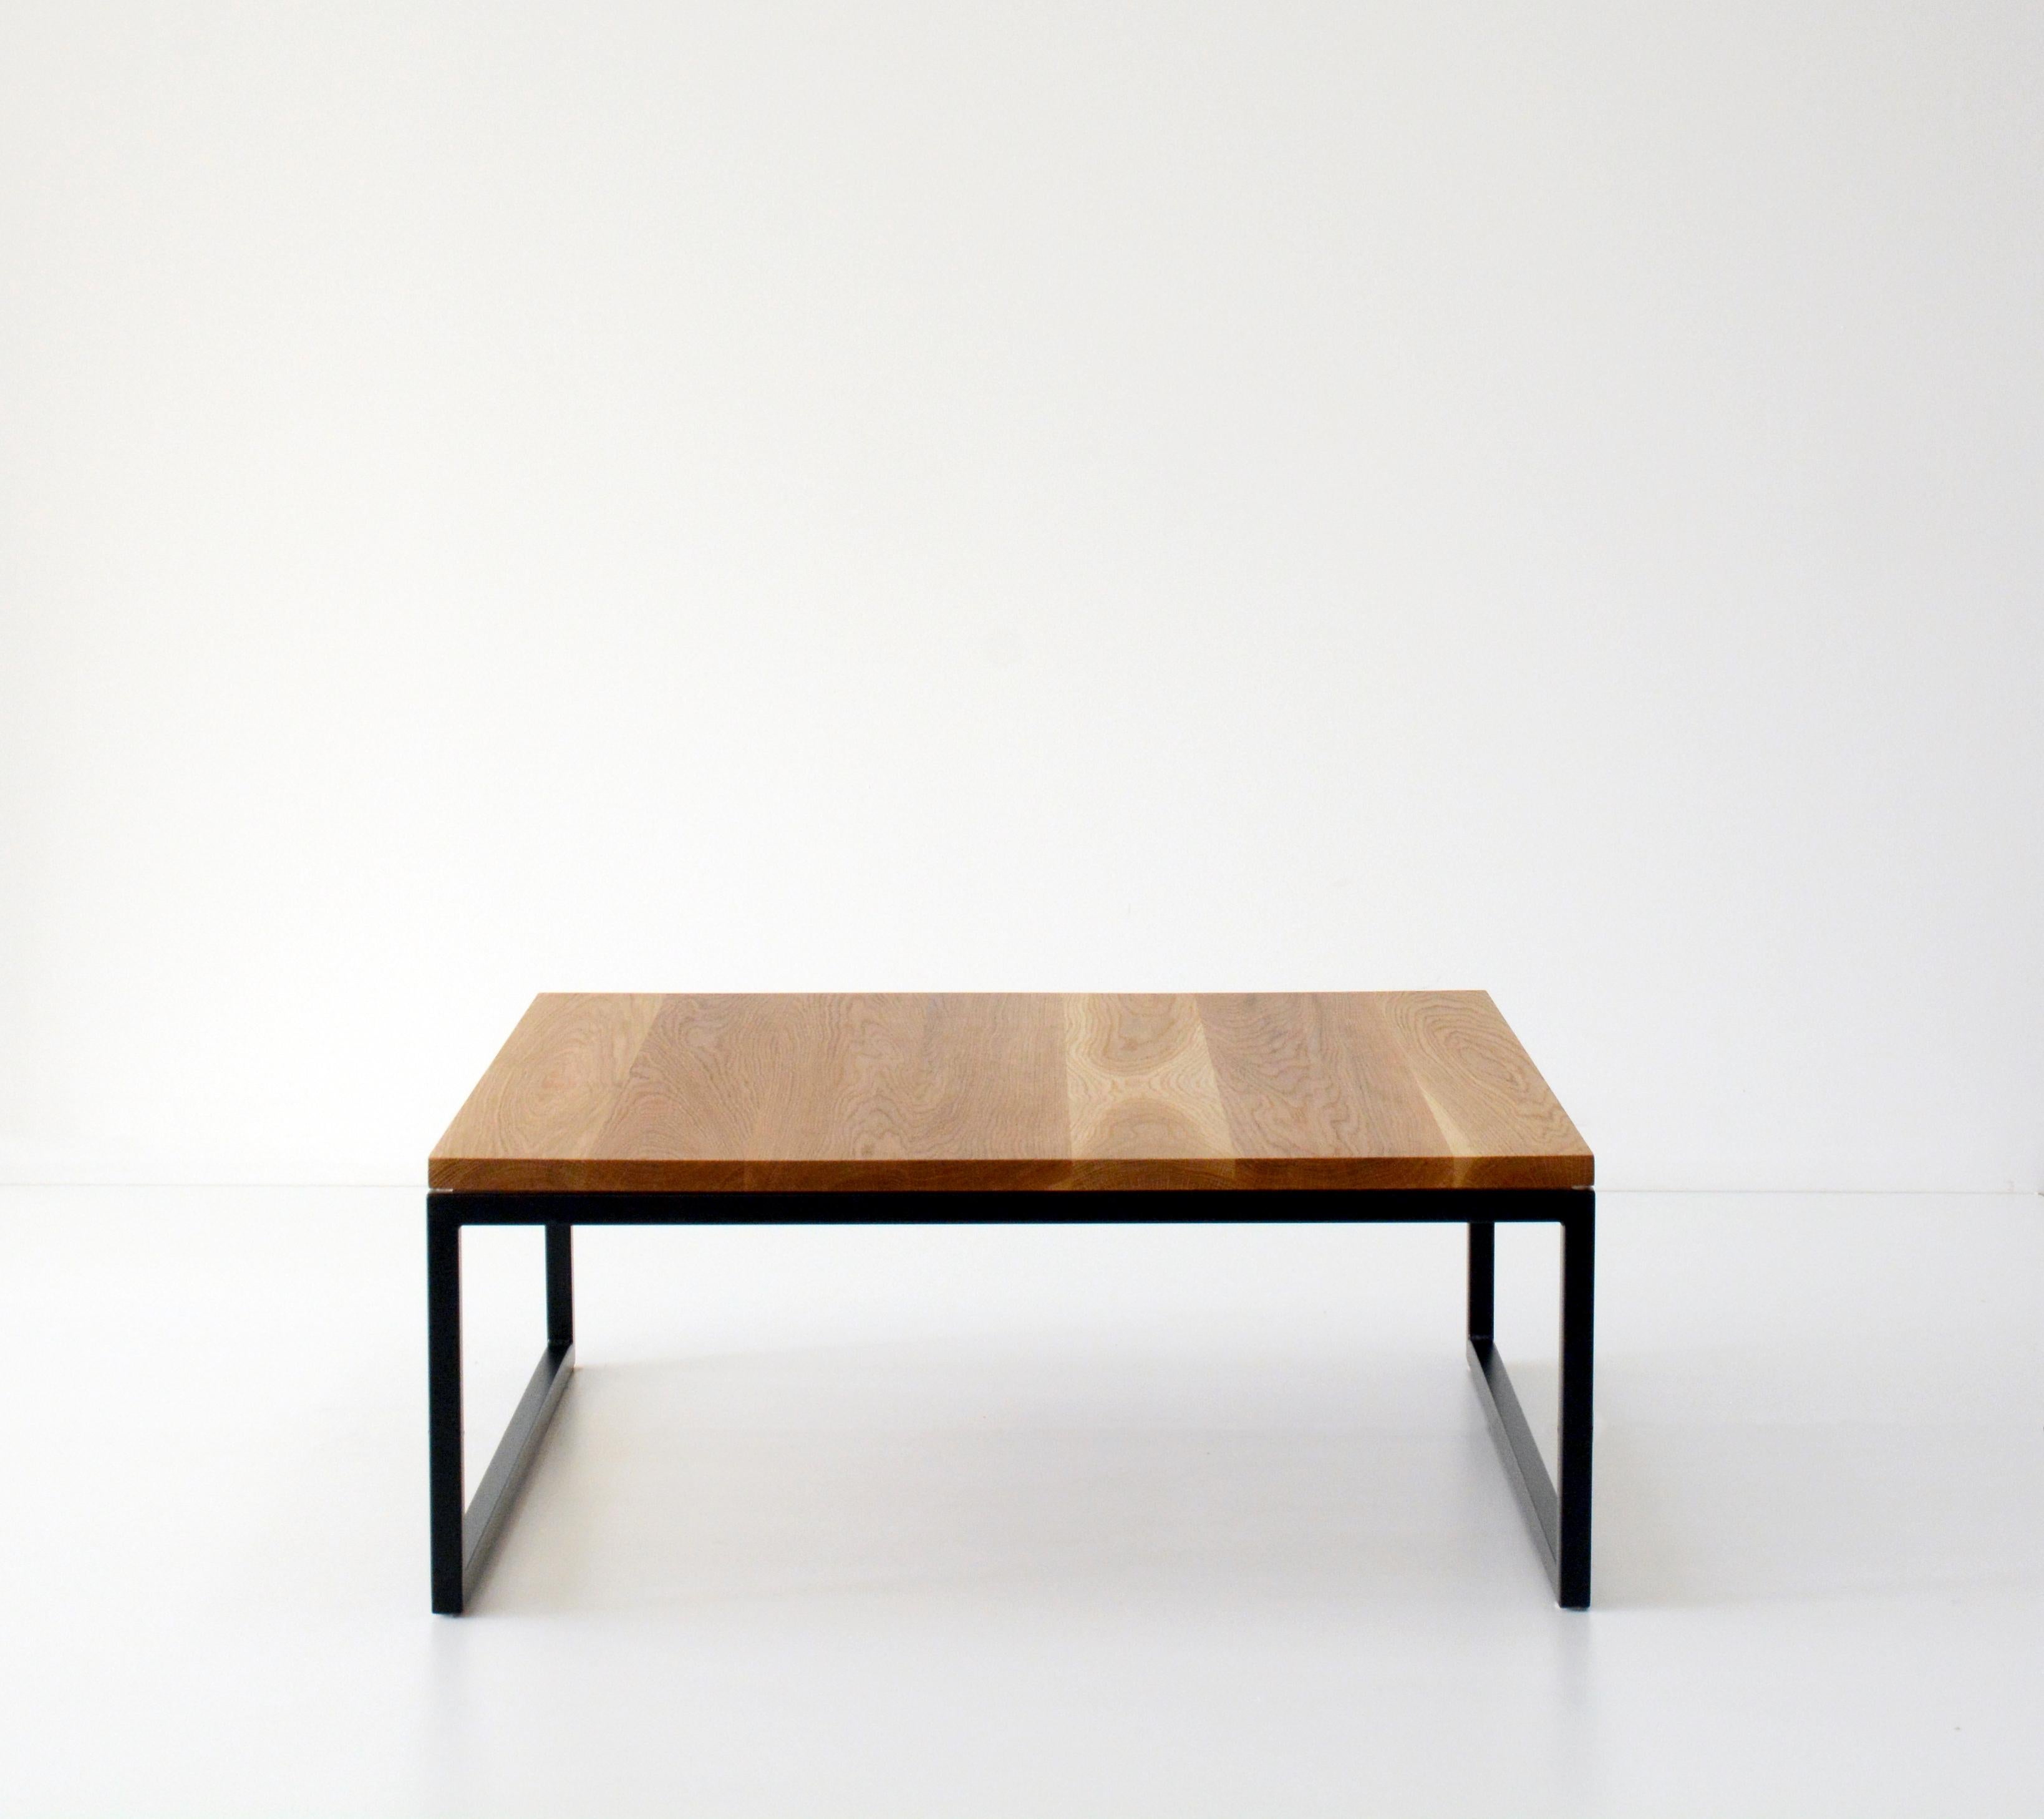 Oak York coffee table by Hollis & Morris
Dimensions: 36